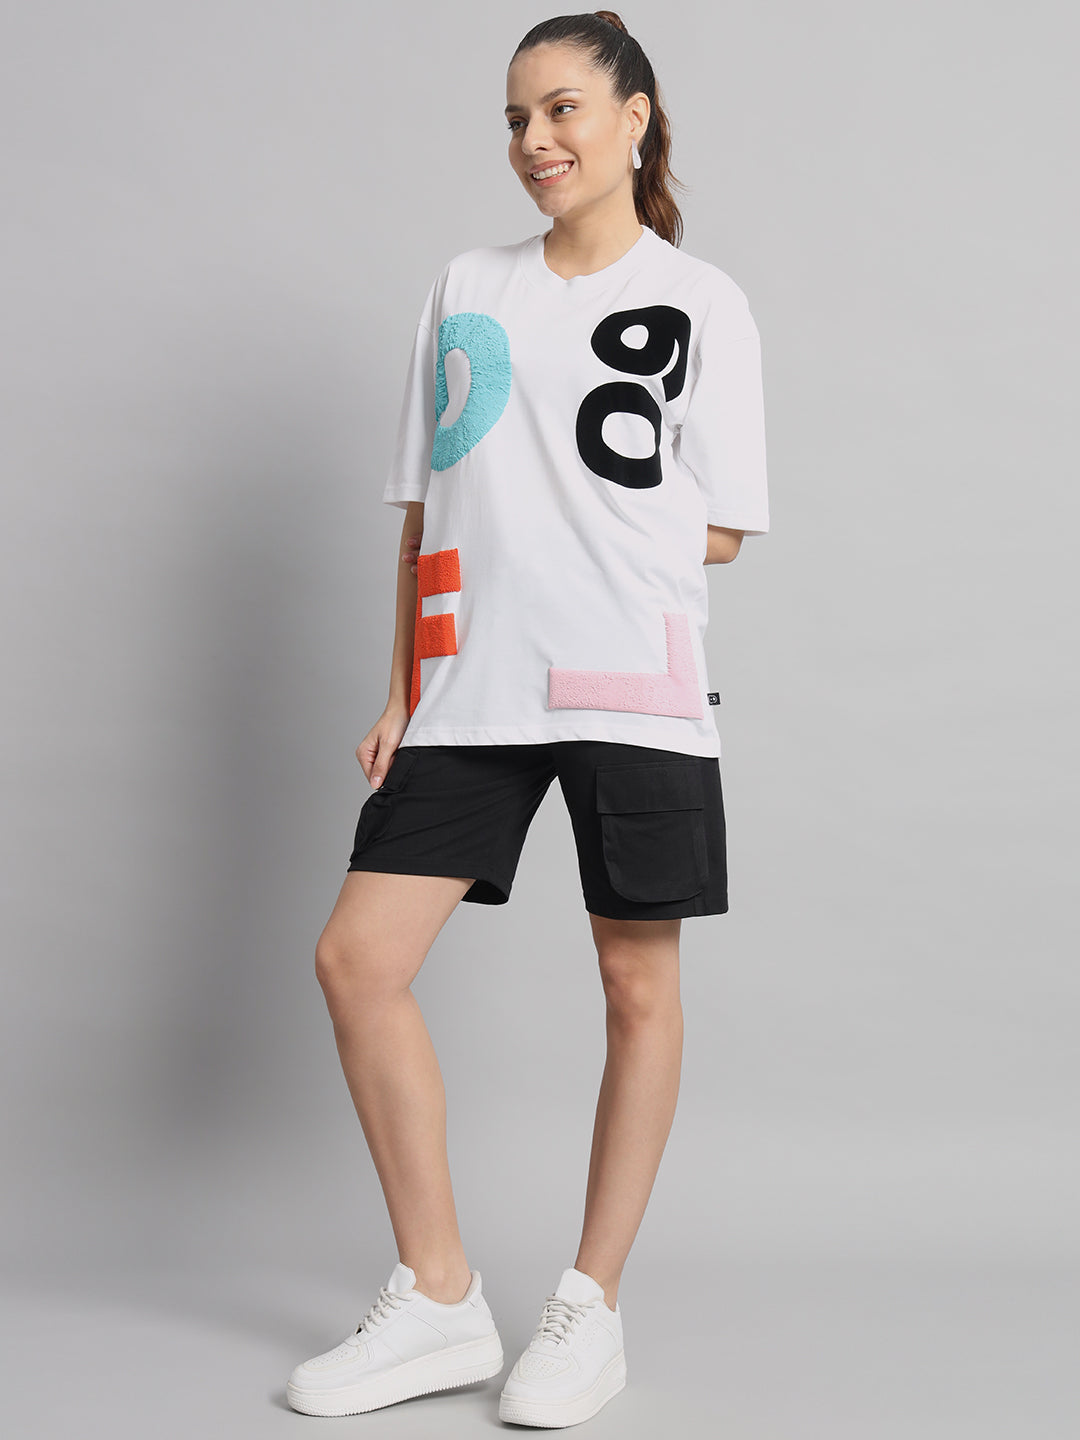 GFL09 Women T-shirt and Short Set